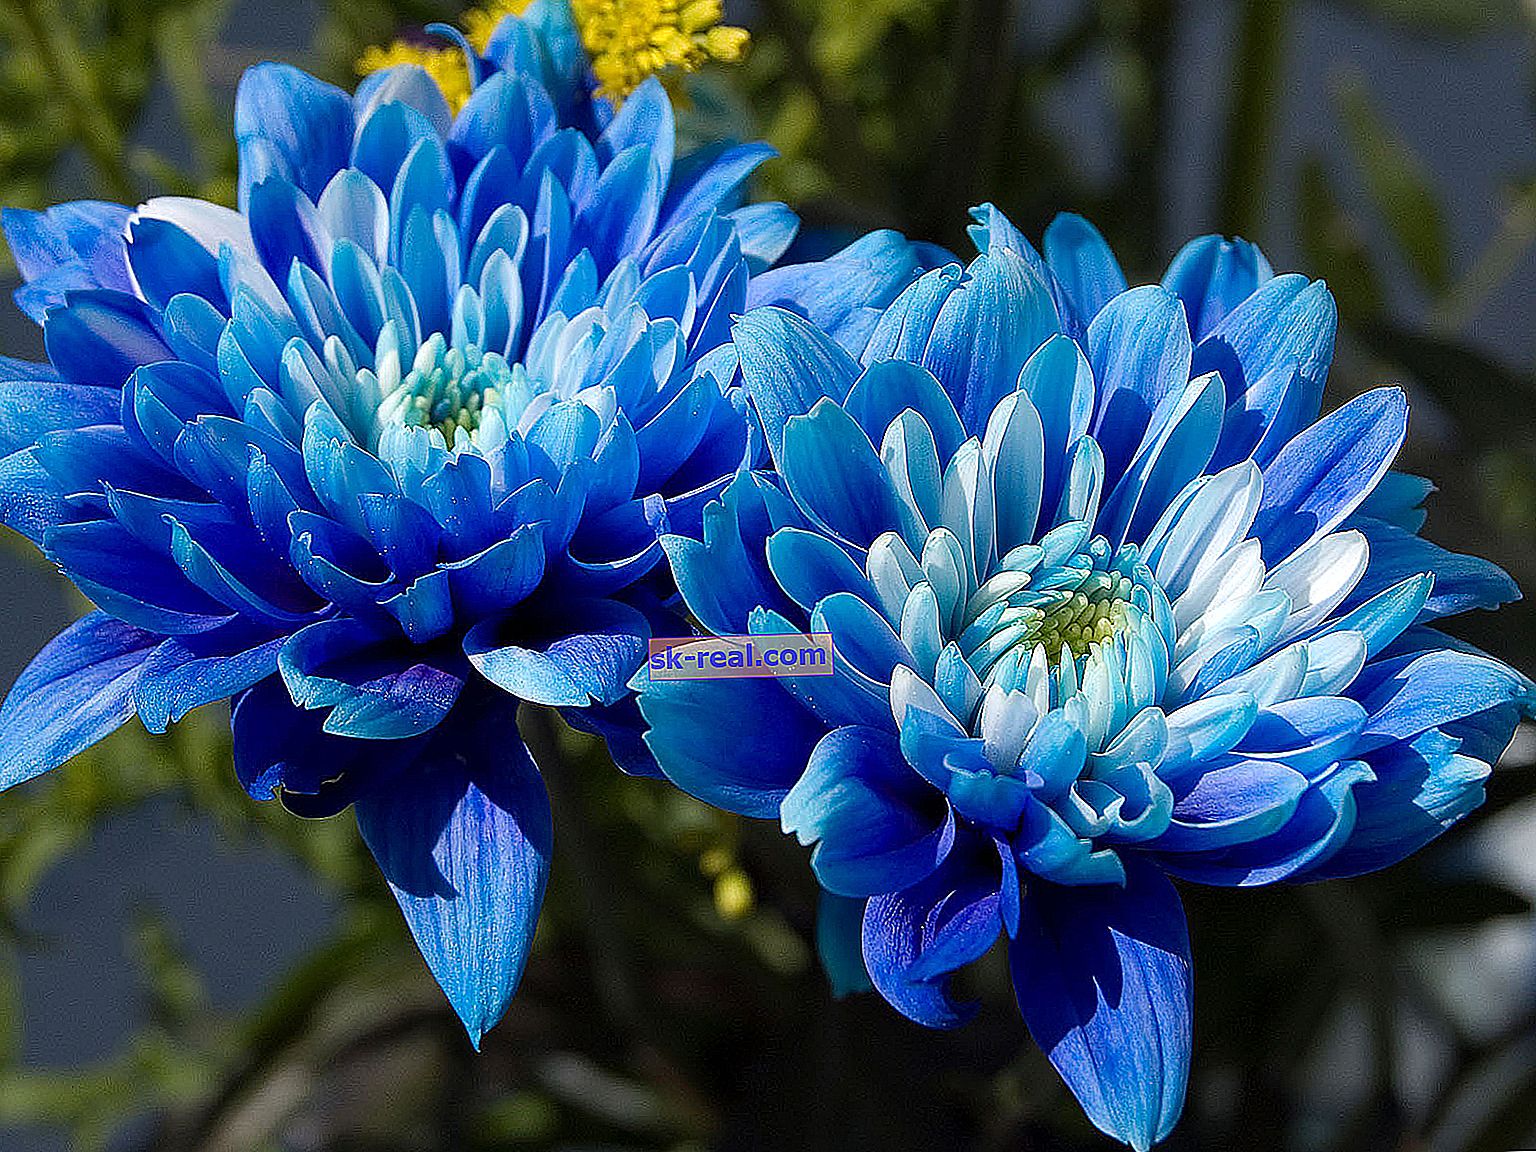 Сини хризантеми: характеристики и препоръки за отглеждане